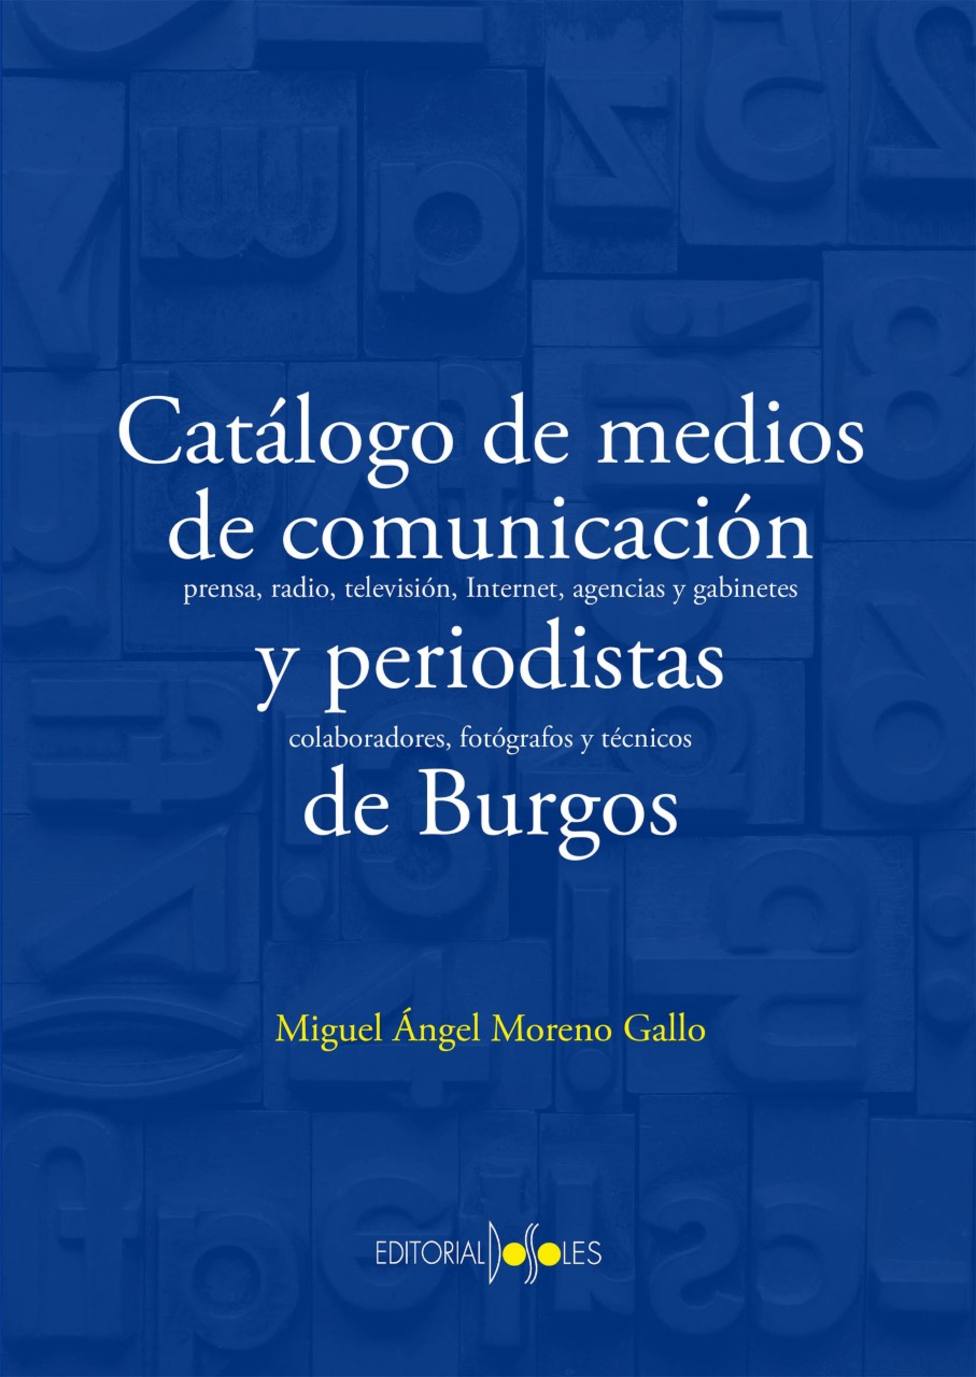 Miguel Ángel Moreno recopila la historia de los medios de comunicación de Burgos